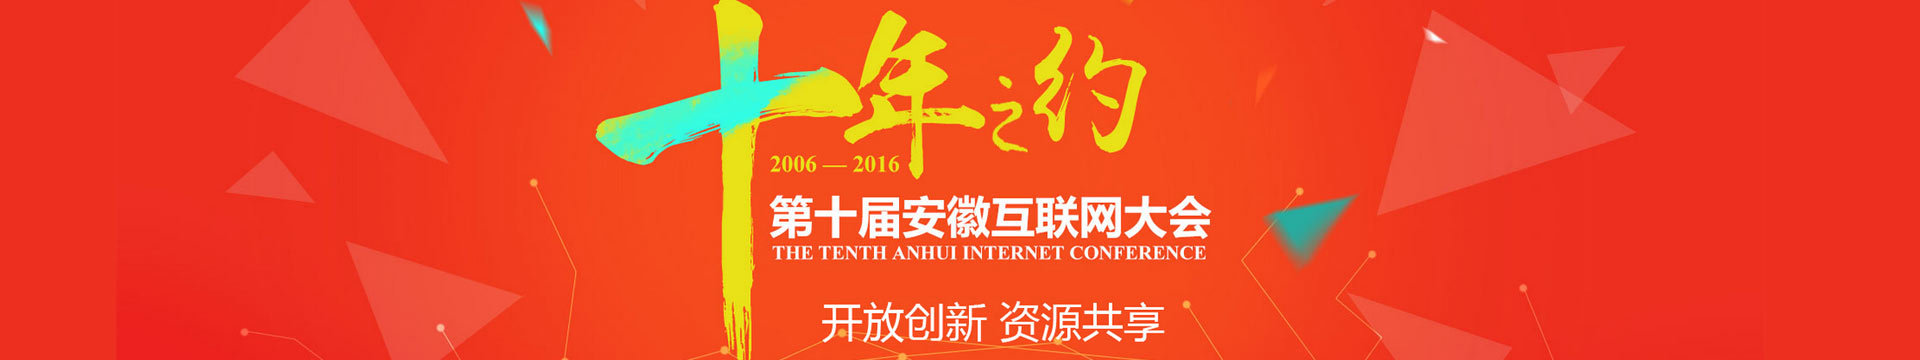 2016第十届安徽互联网大会